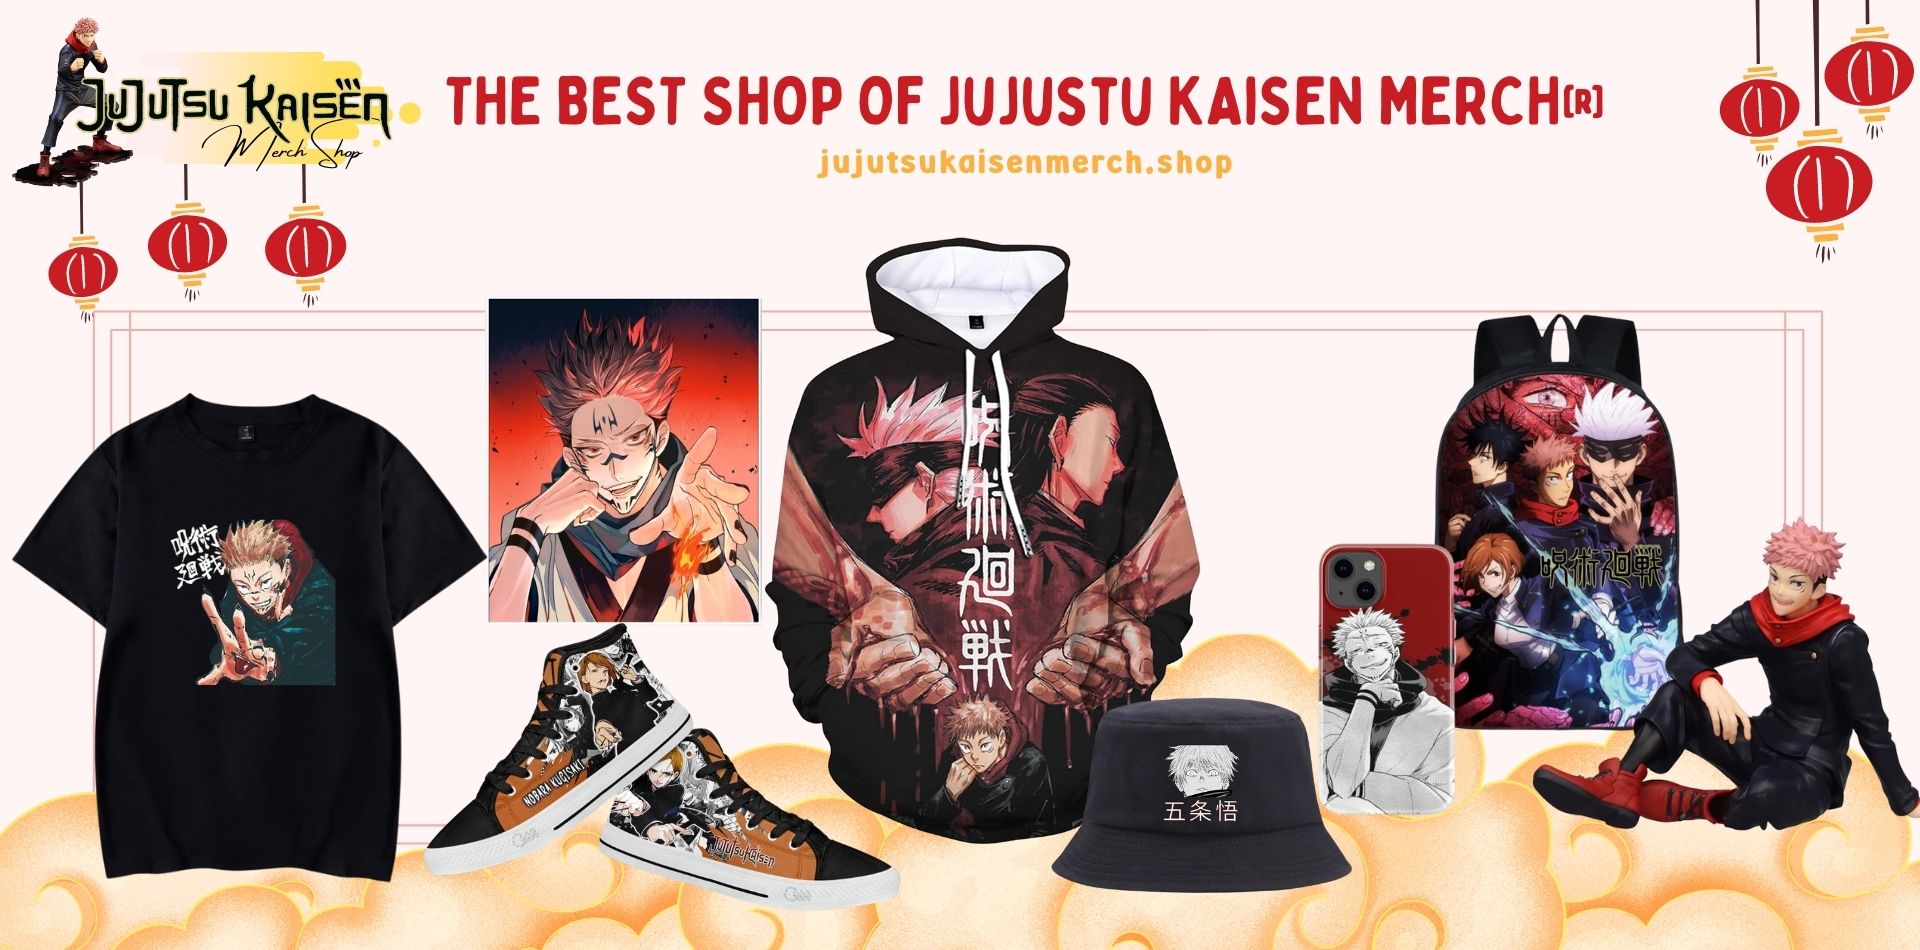 Jujutsu Kaisen Merch Shop Web Banner - Jujutsu Kaisen Shop